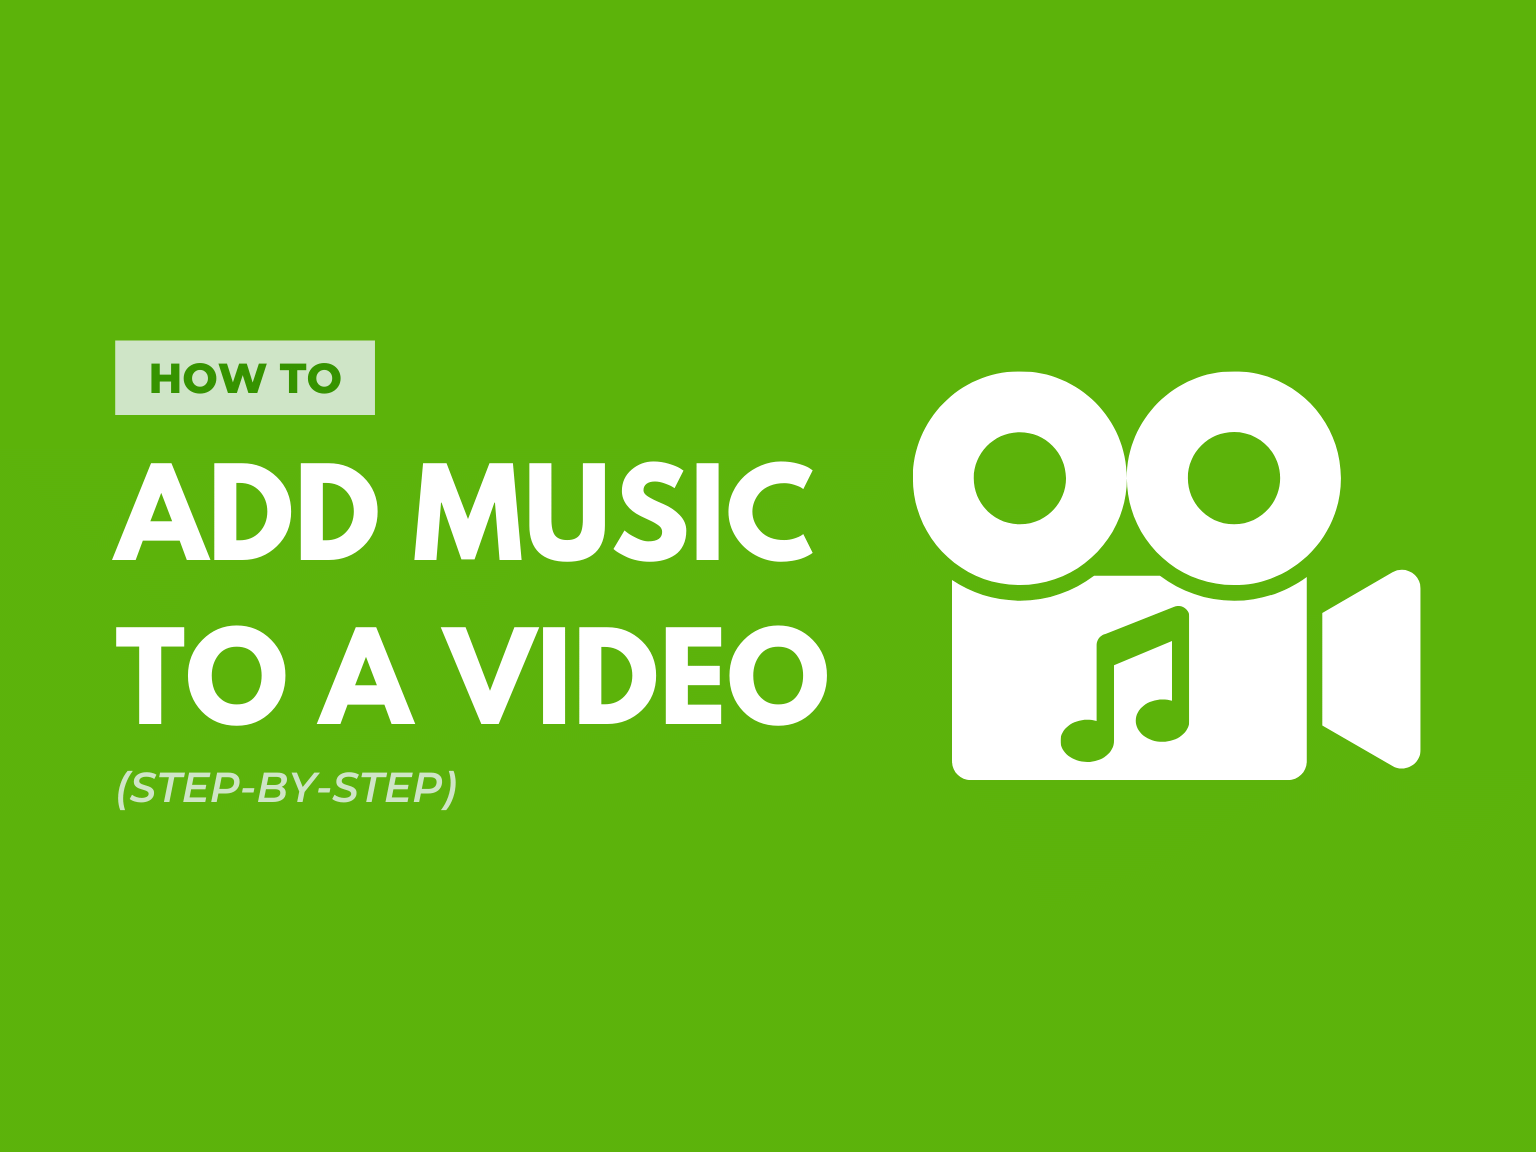 Thêm nhạc vào video (hướng dẫn từng bước) | Blog của TechSmith sẽ giúp bạn thêm phần chuyên nghiệp và sáng tạo cho những video đặc biệt của mình. Hãy xem hình ảnh liên quan để tìm hiểu thêm về cách thêm các bản nhạc độc đáo và hấp dẫn cho những video của bạn nhé!